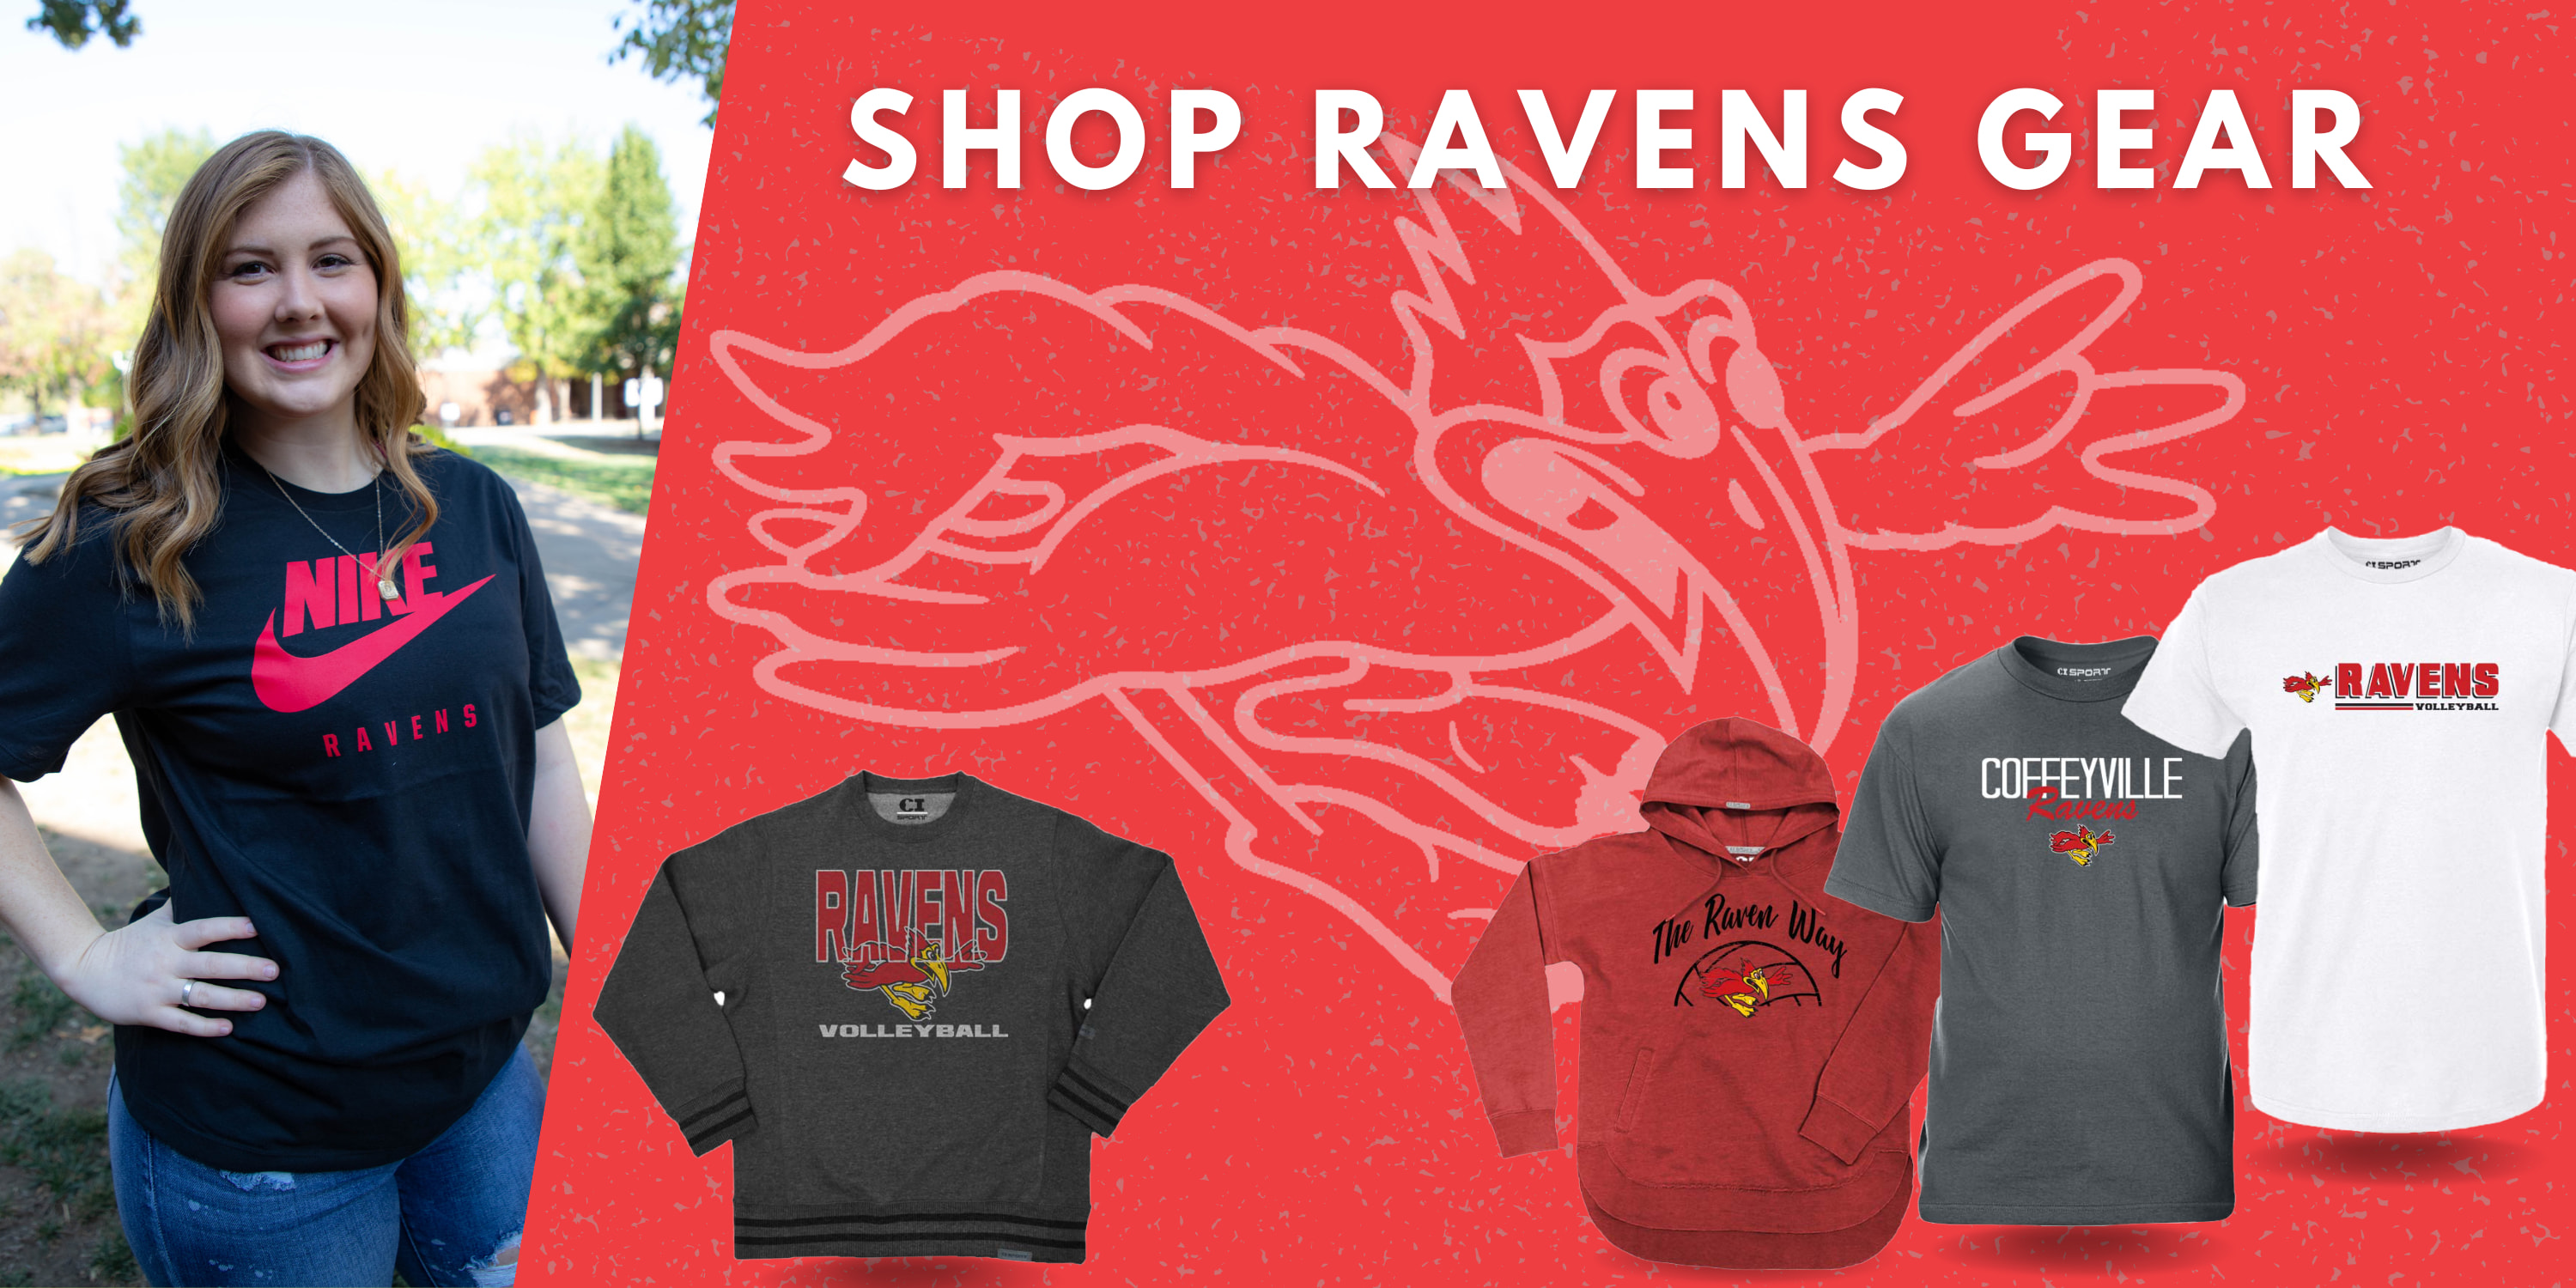 Shop Ravens Gear